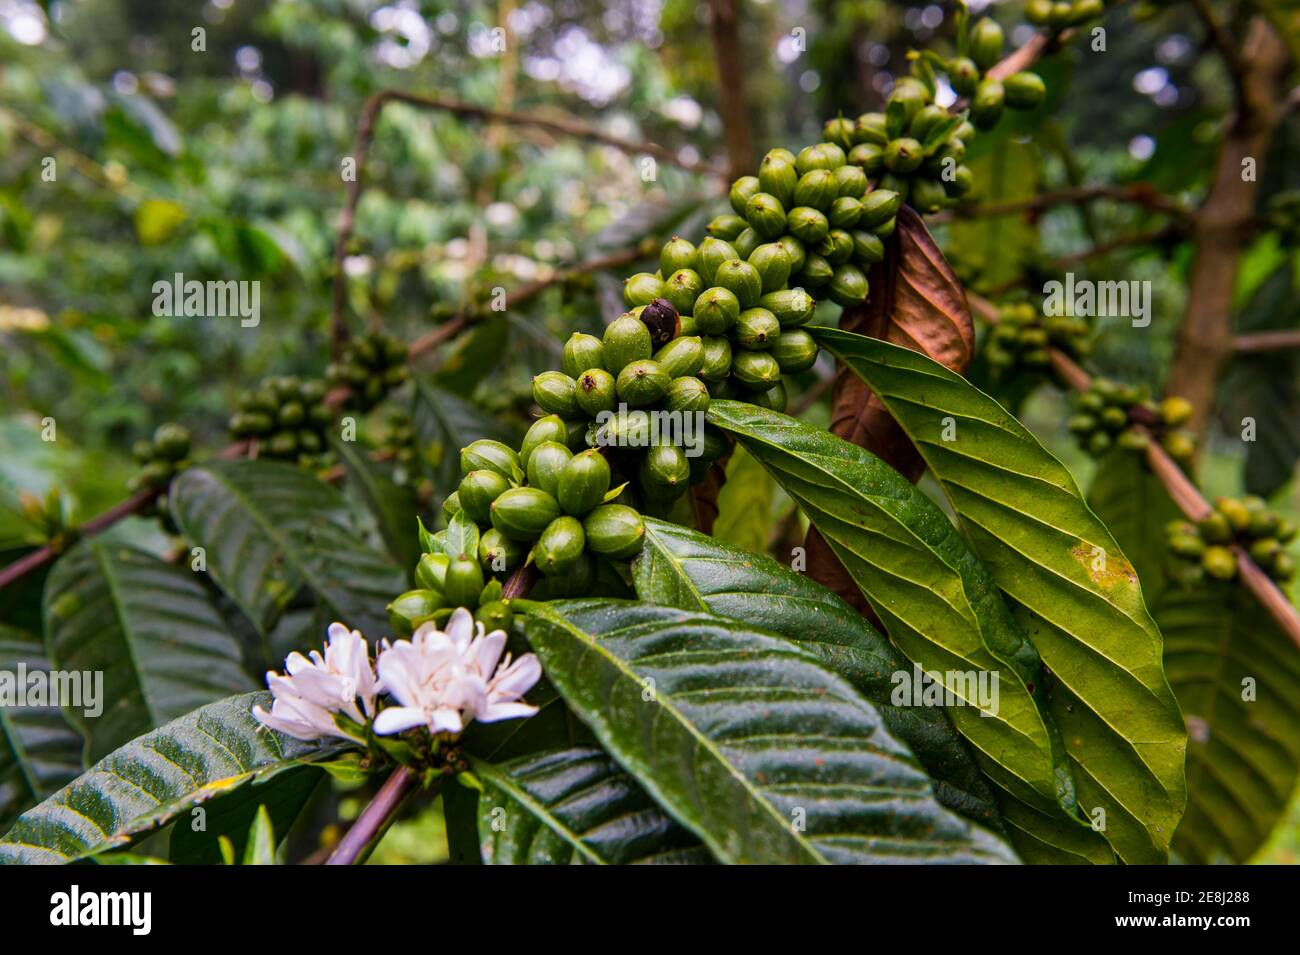 Cerca de granos de café (Rubiaceae) en una plantación de café en la selva de Santo Tomé, Santo Tomé y Príncipe, océano Atlántico Foto de stock